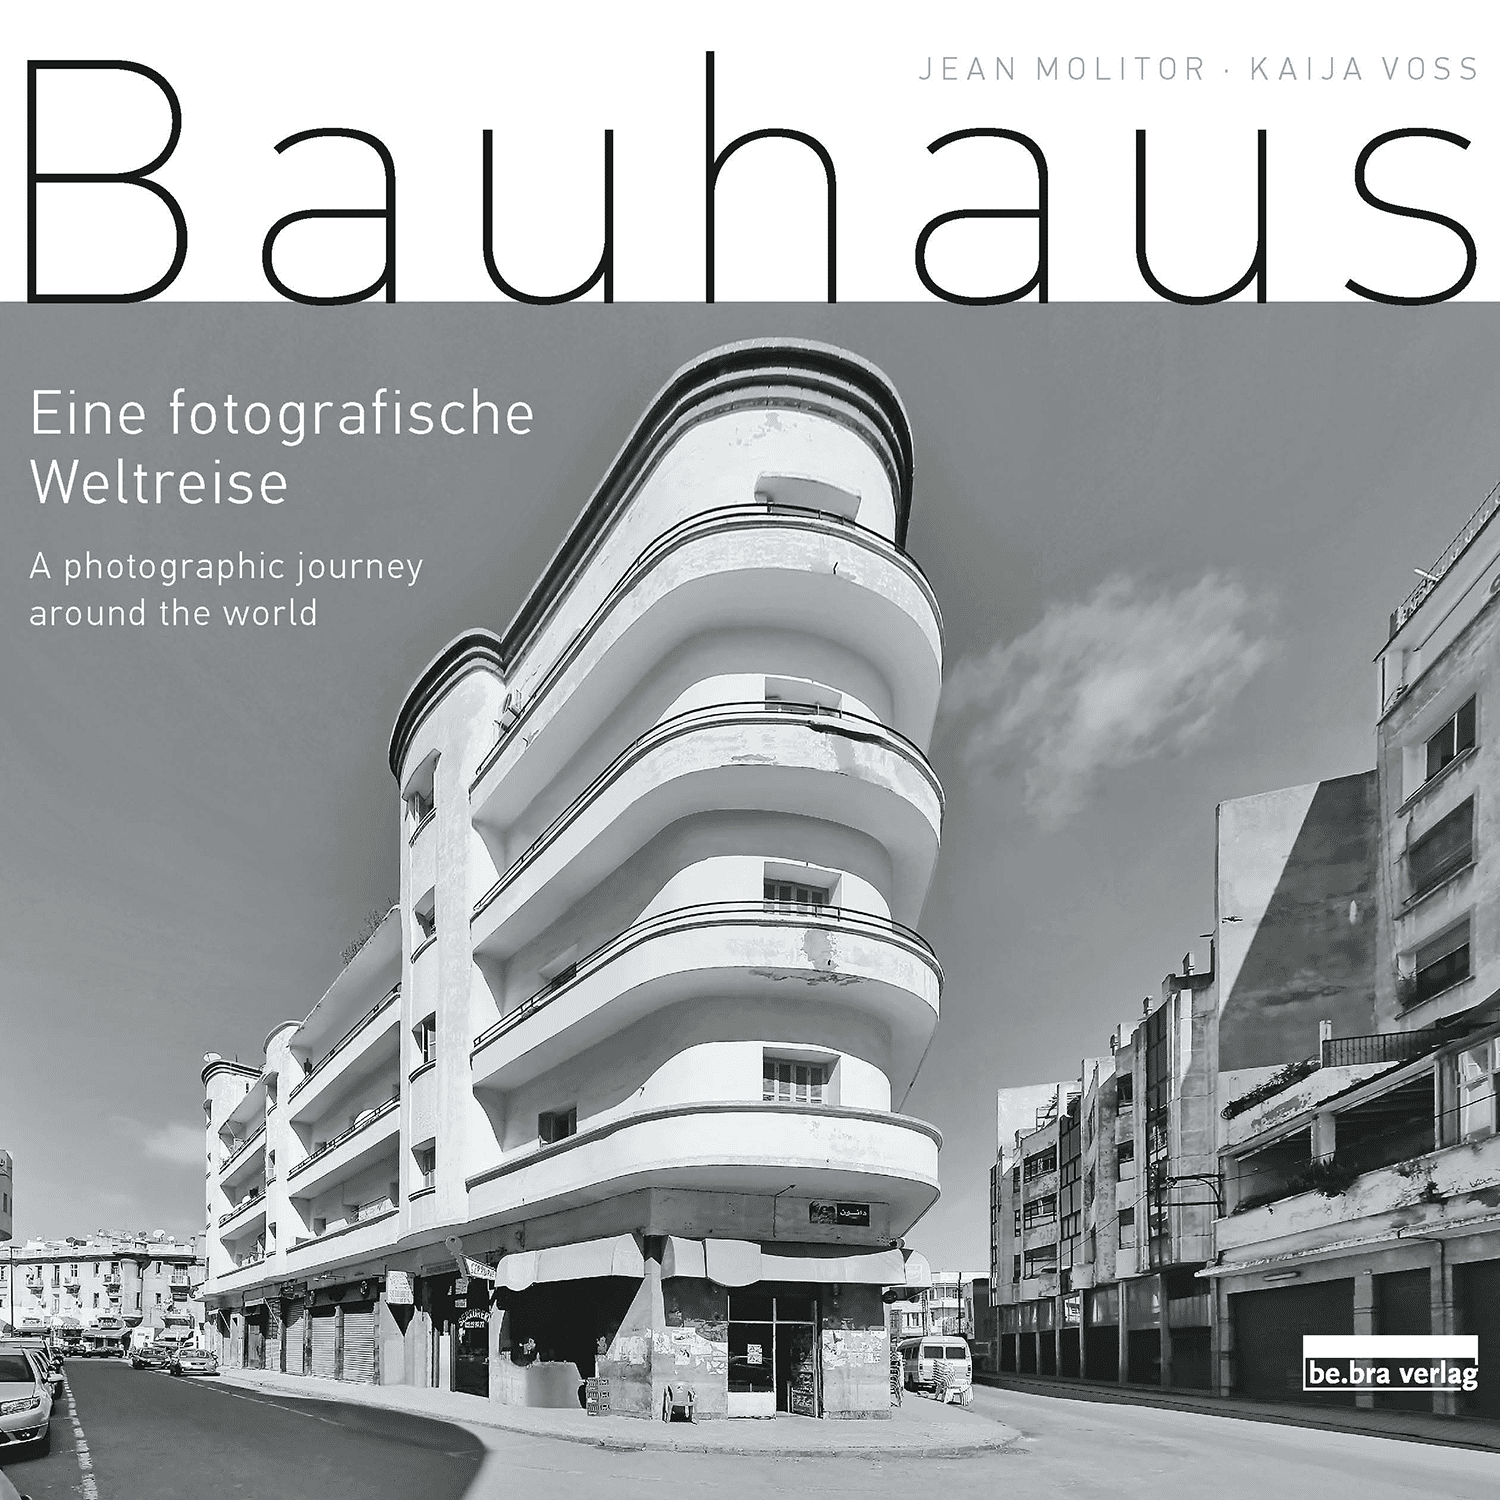 Afbeelding van Bauhaus - Een fotografische wereldreis rond de wereld